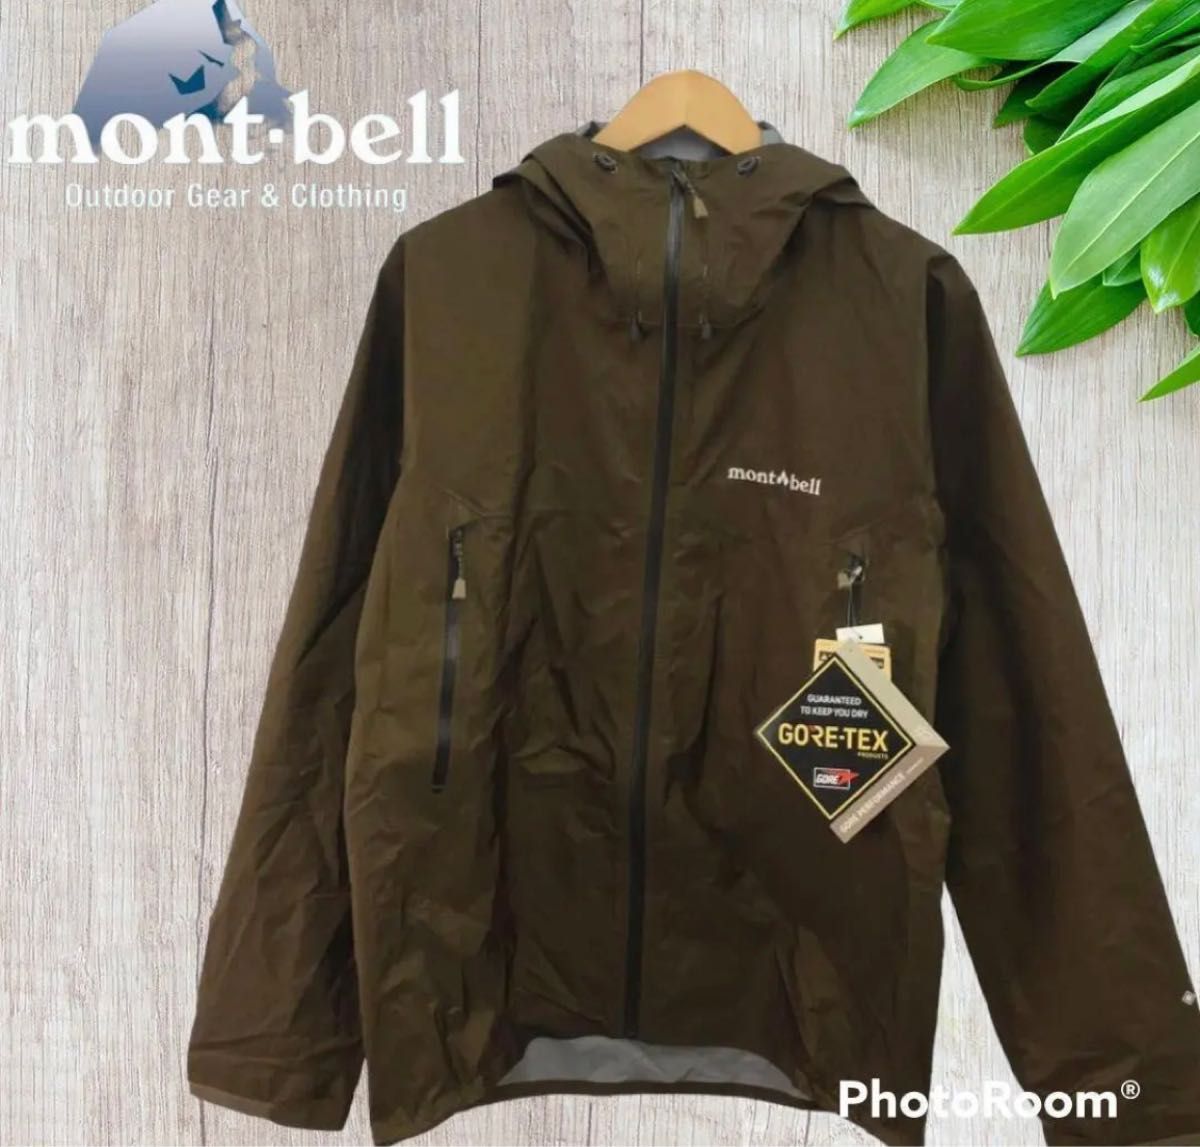 新規購入 ストームクルーザージャケットL ①新品タグ付 mont-bell